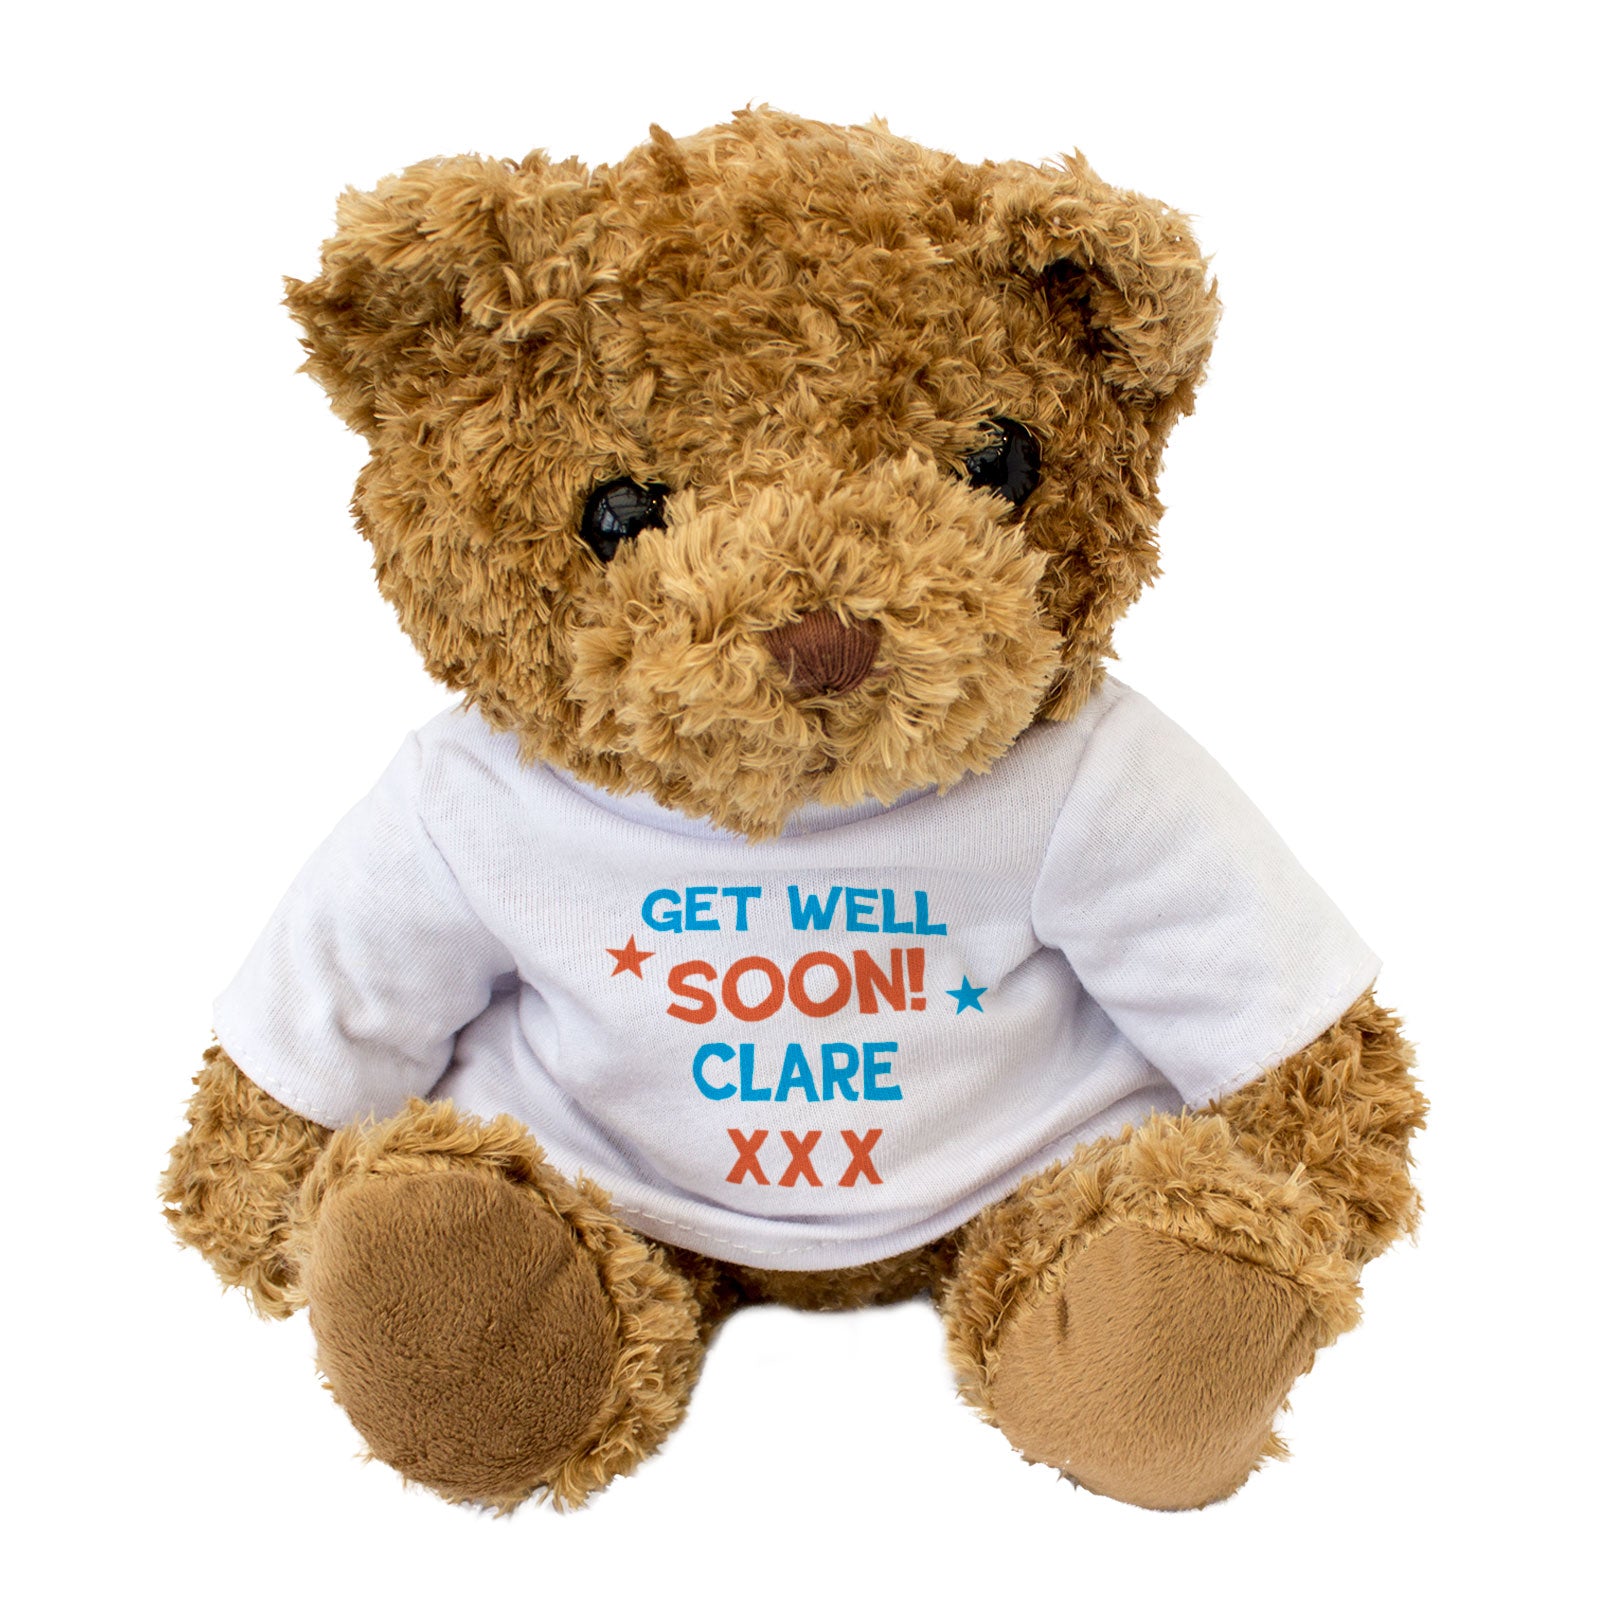 Get Well Soon Clare - Teddy Bear